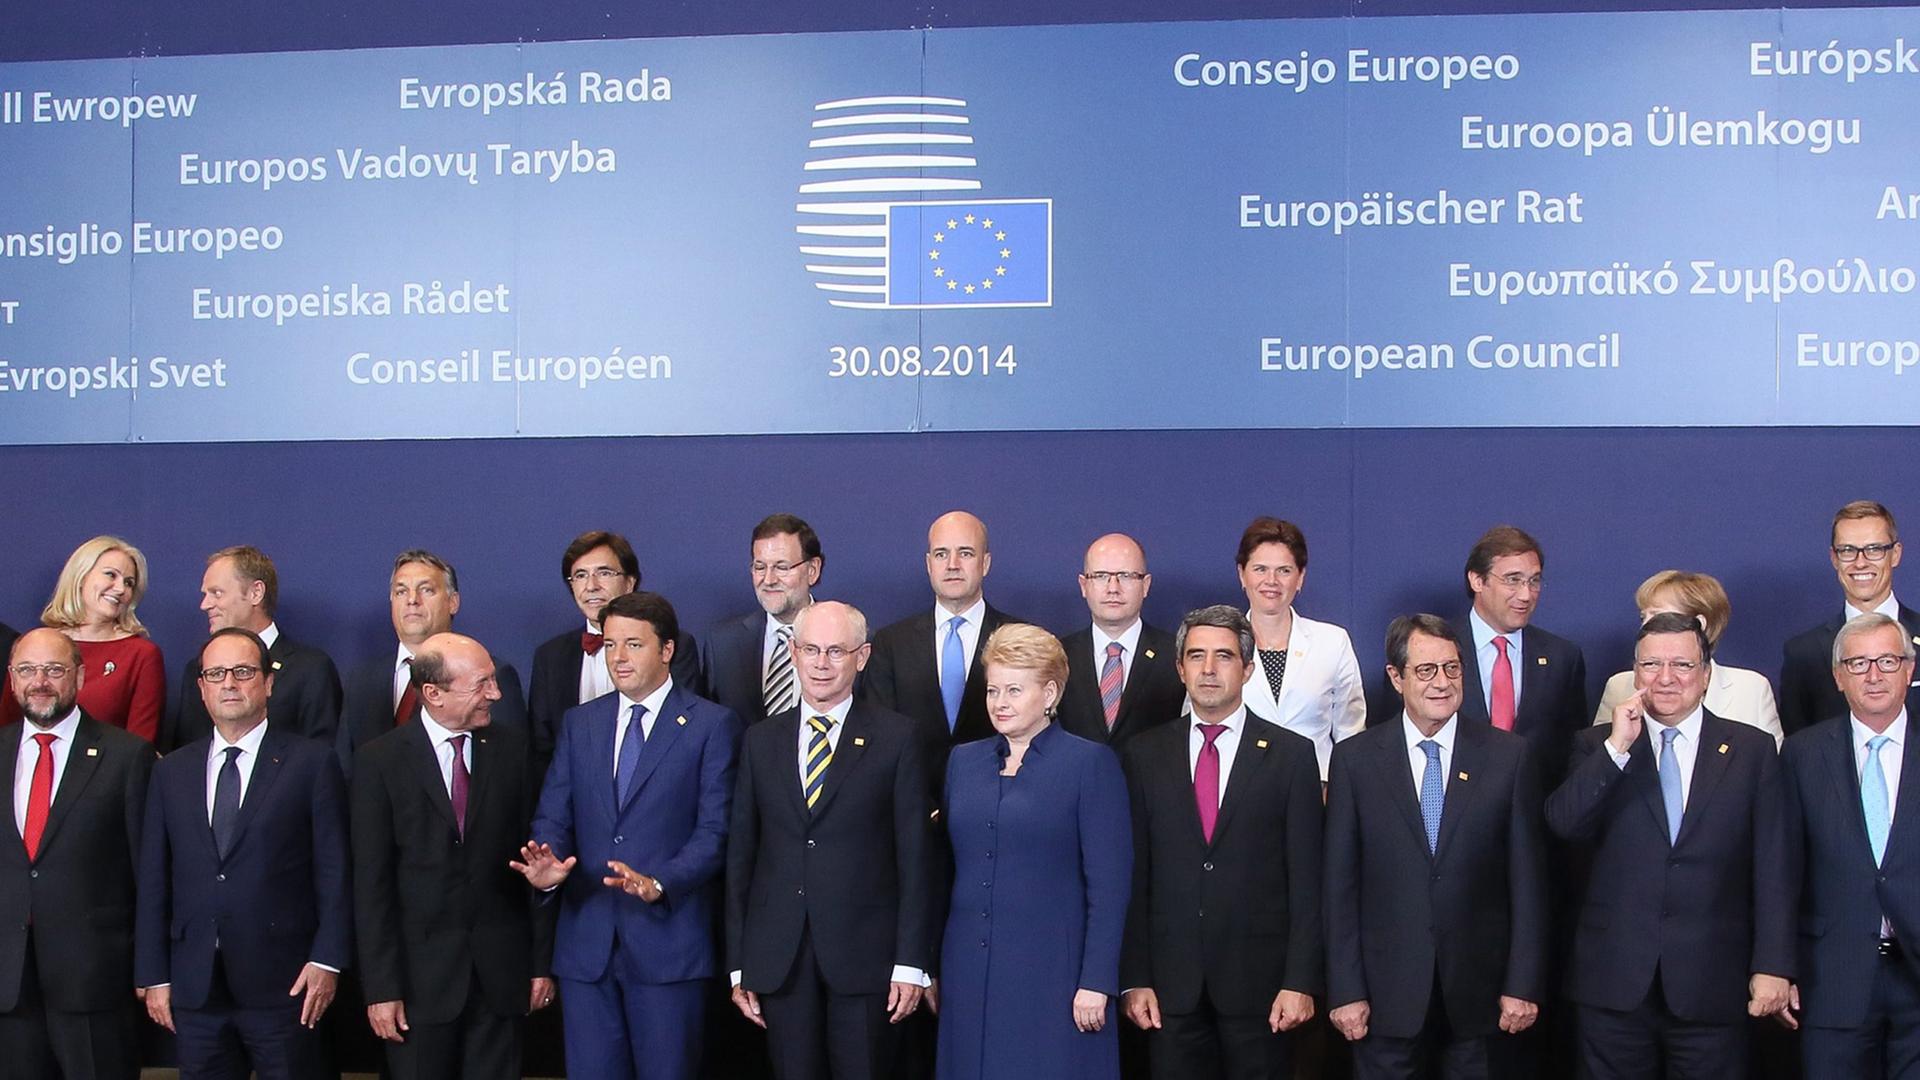 Gruppenbild nach dem EU-Sondergipfel in Brüssel (Ausschnitt)